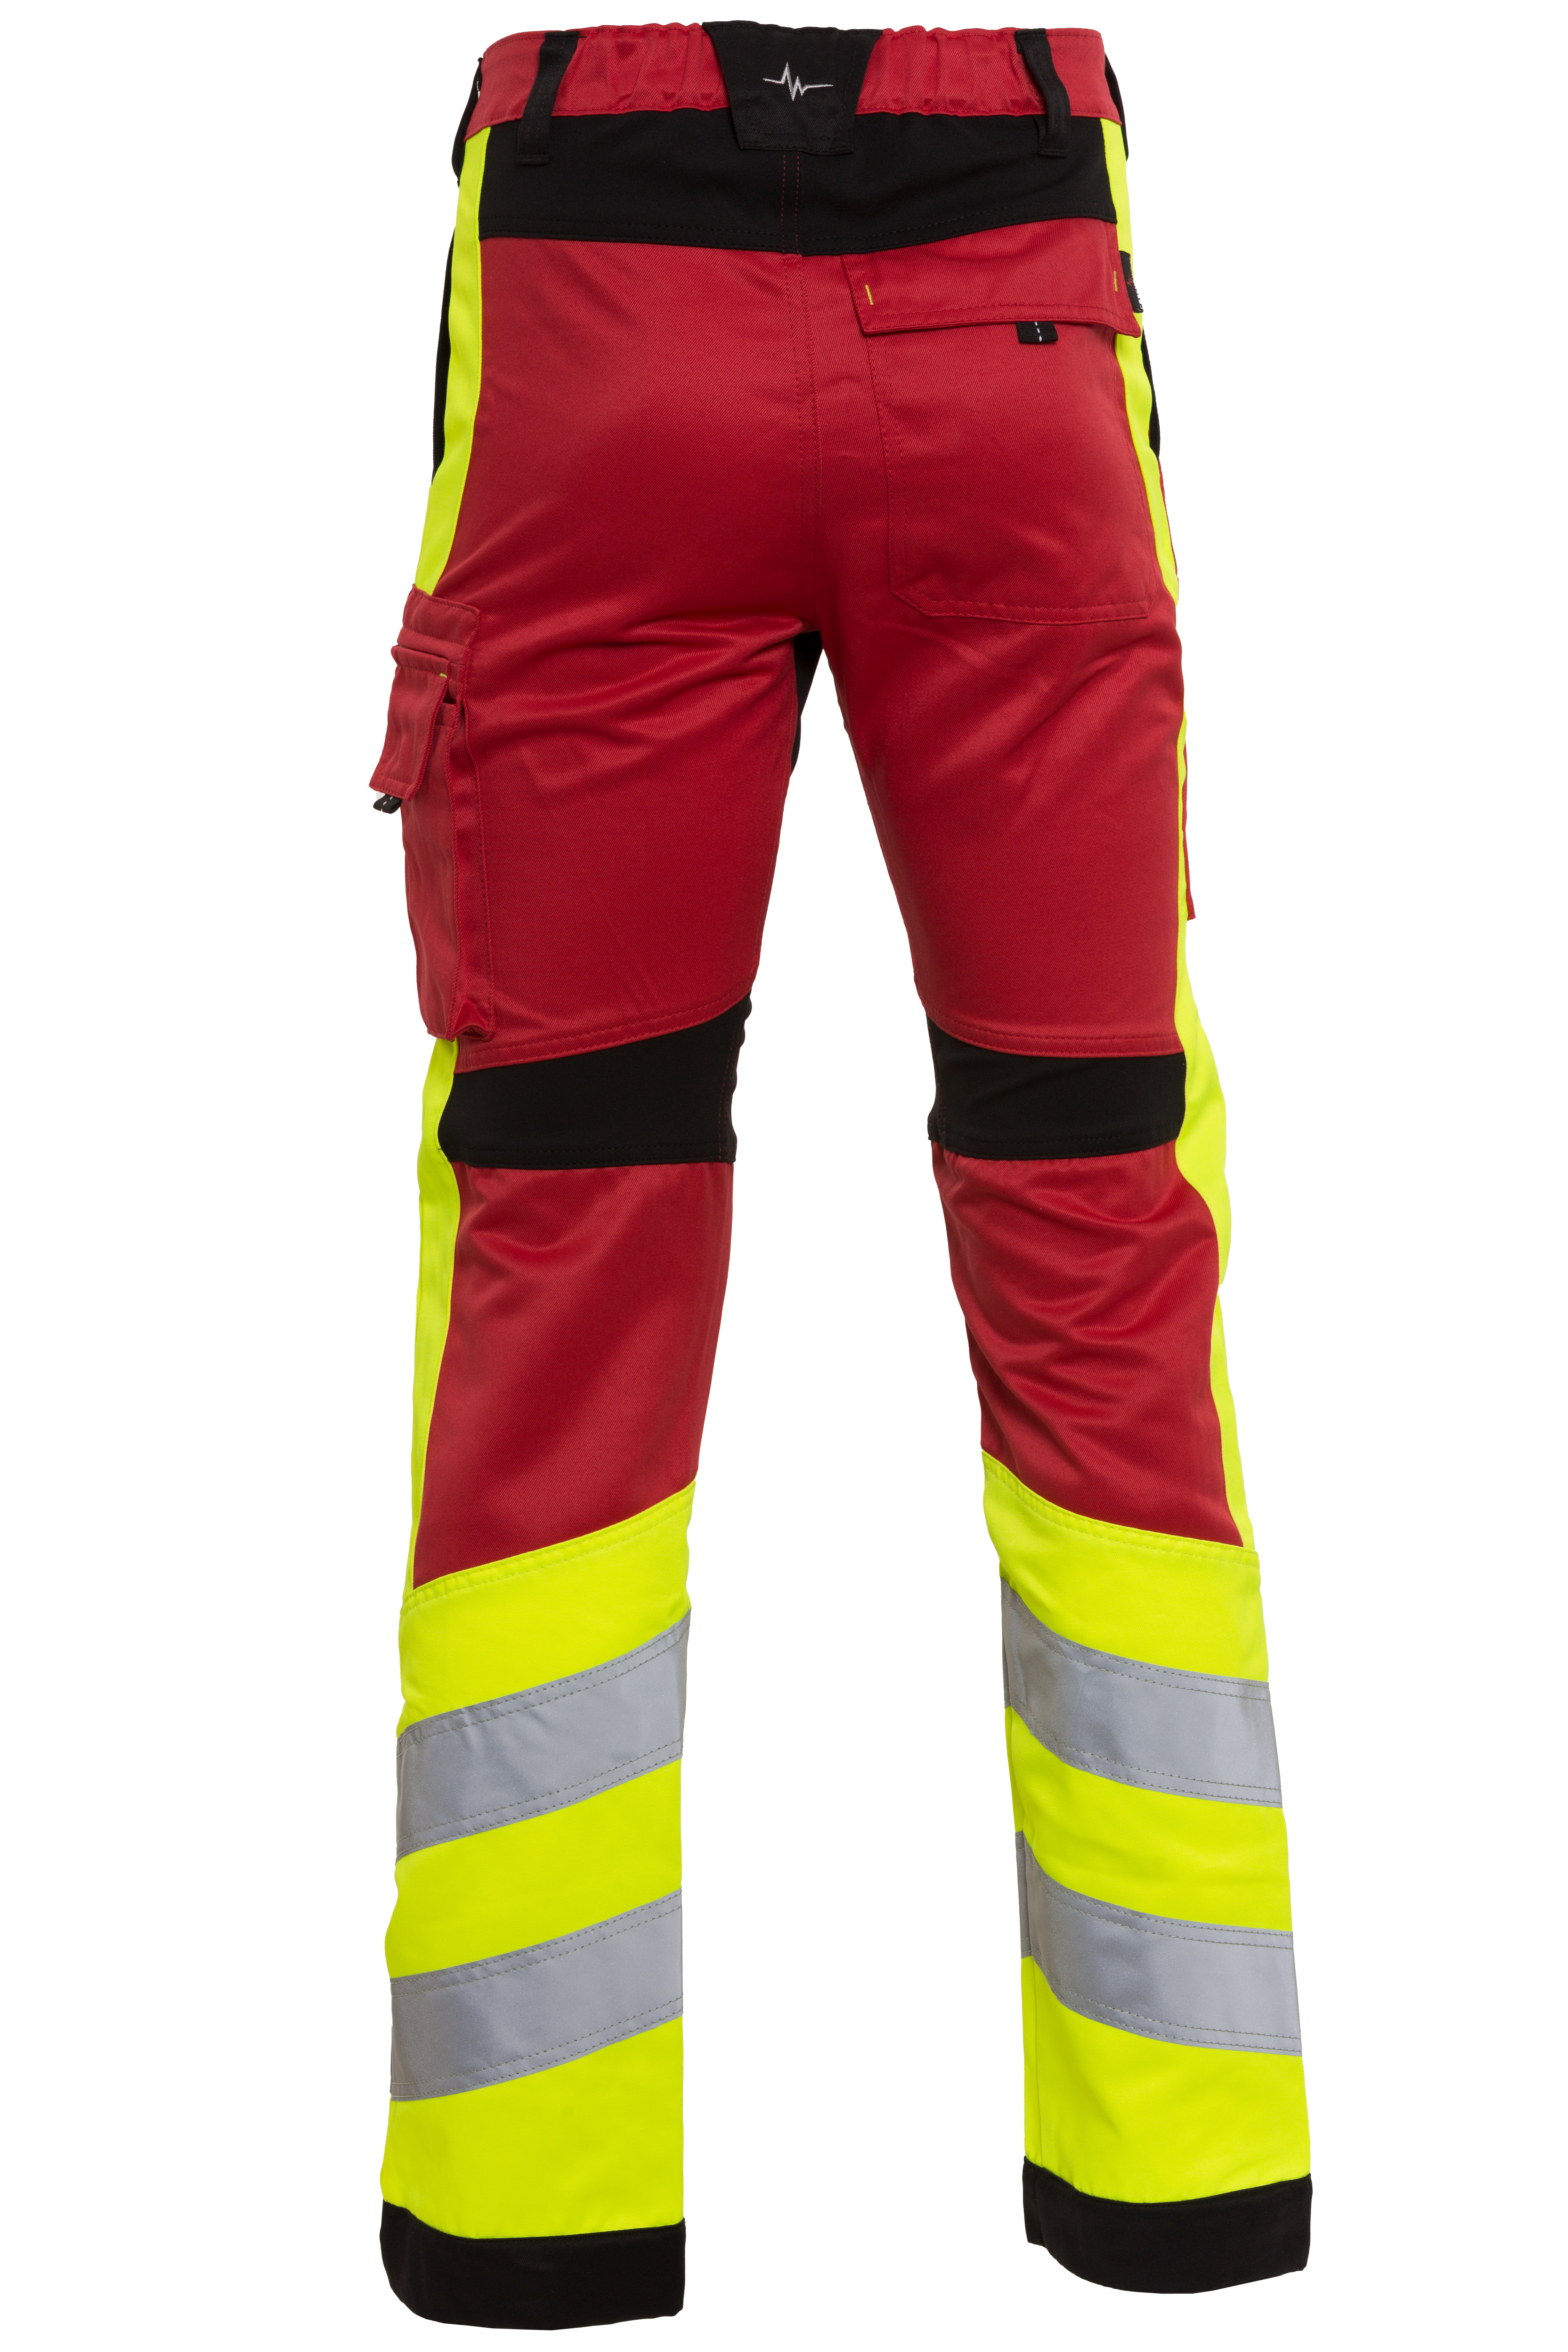 Rescuewear Unisex Hose Stretch HiVis Klasse 1 Rot / Schwarz / Neon Gelb  - 52